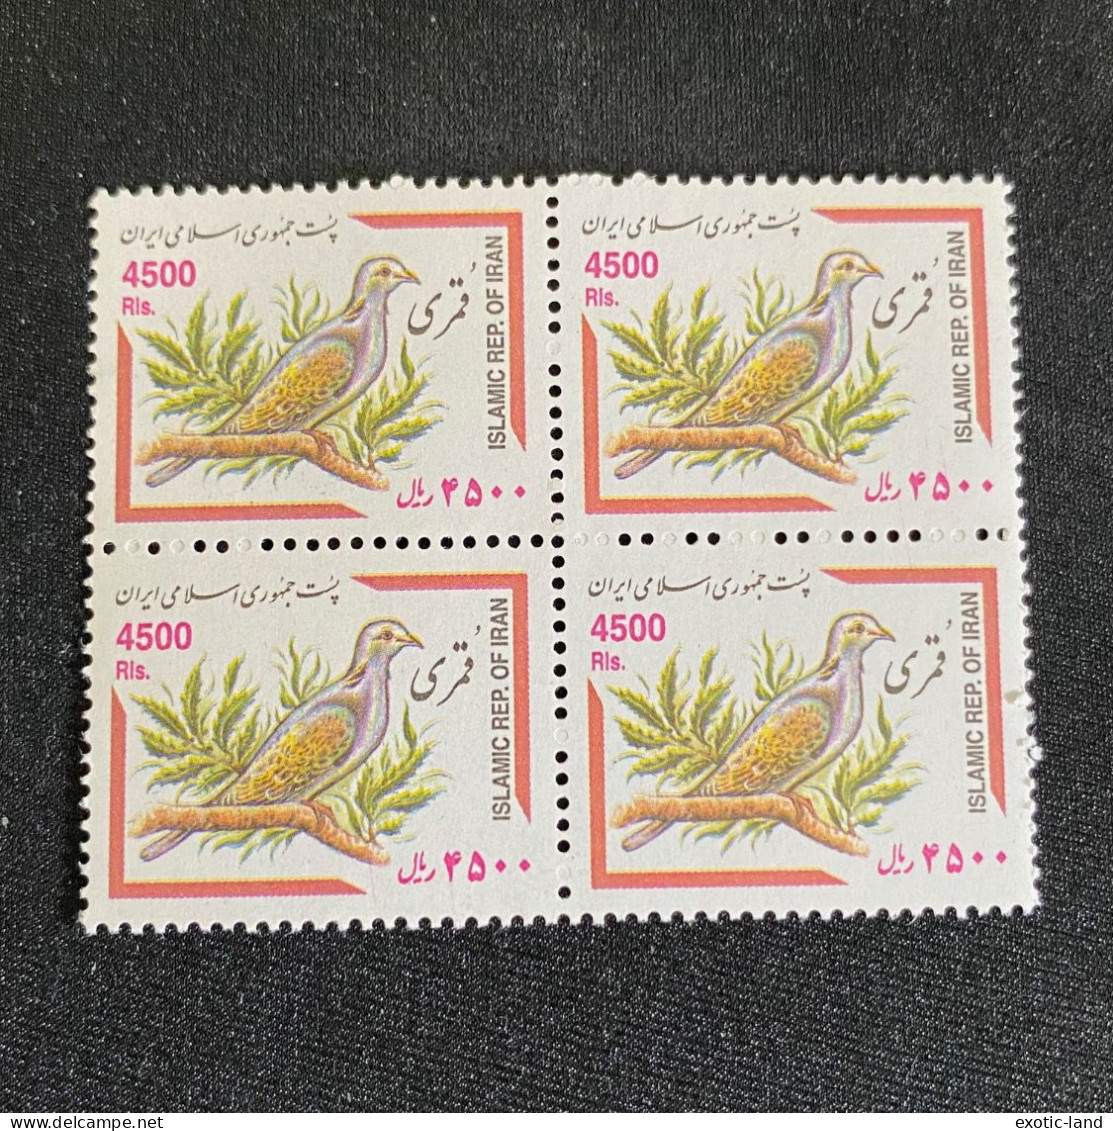 Iran Stamp Blocks 2002 Birds CV $52 - Irán